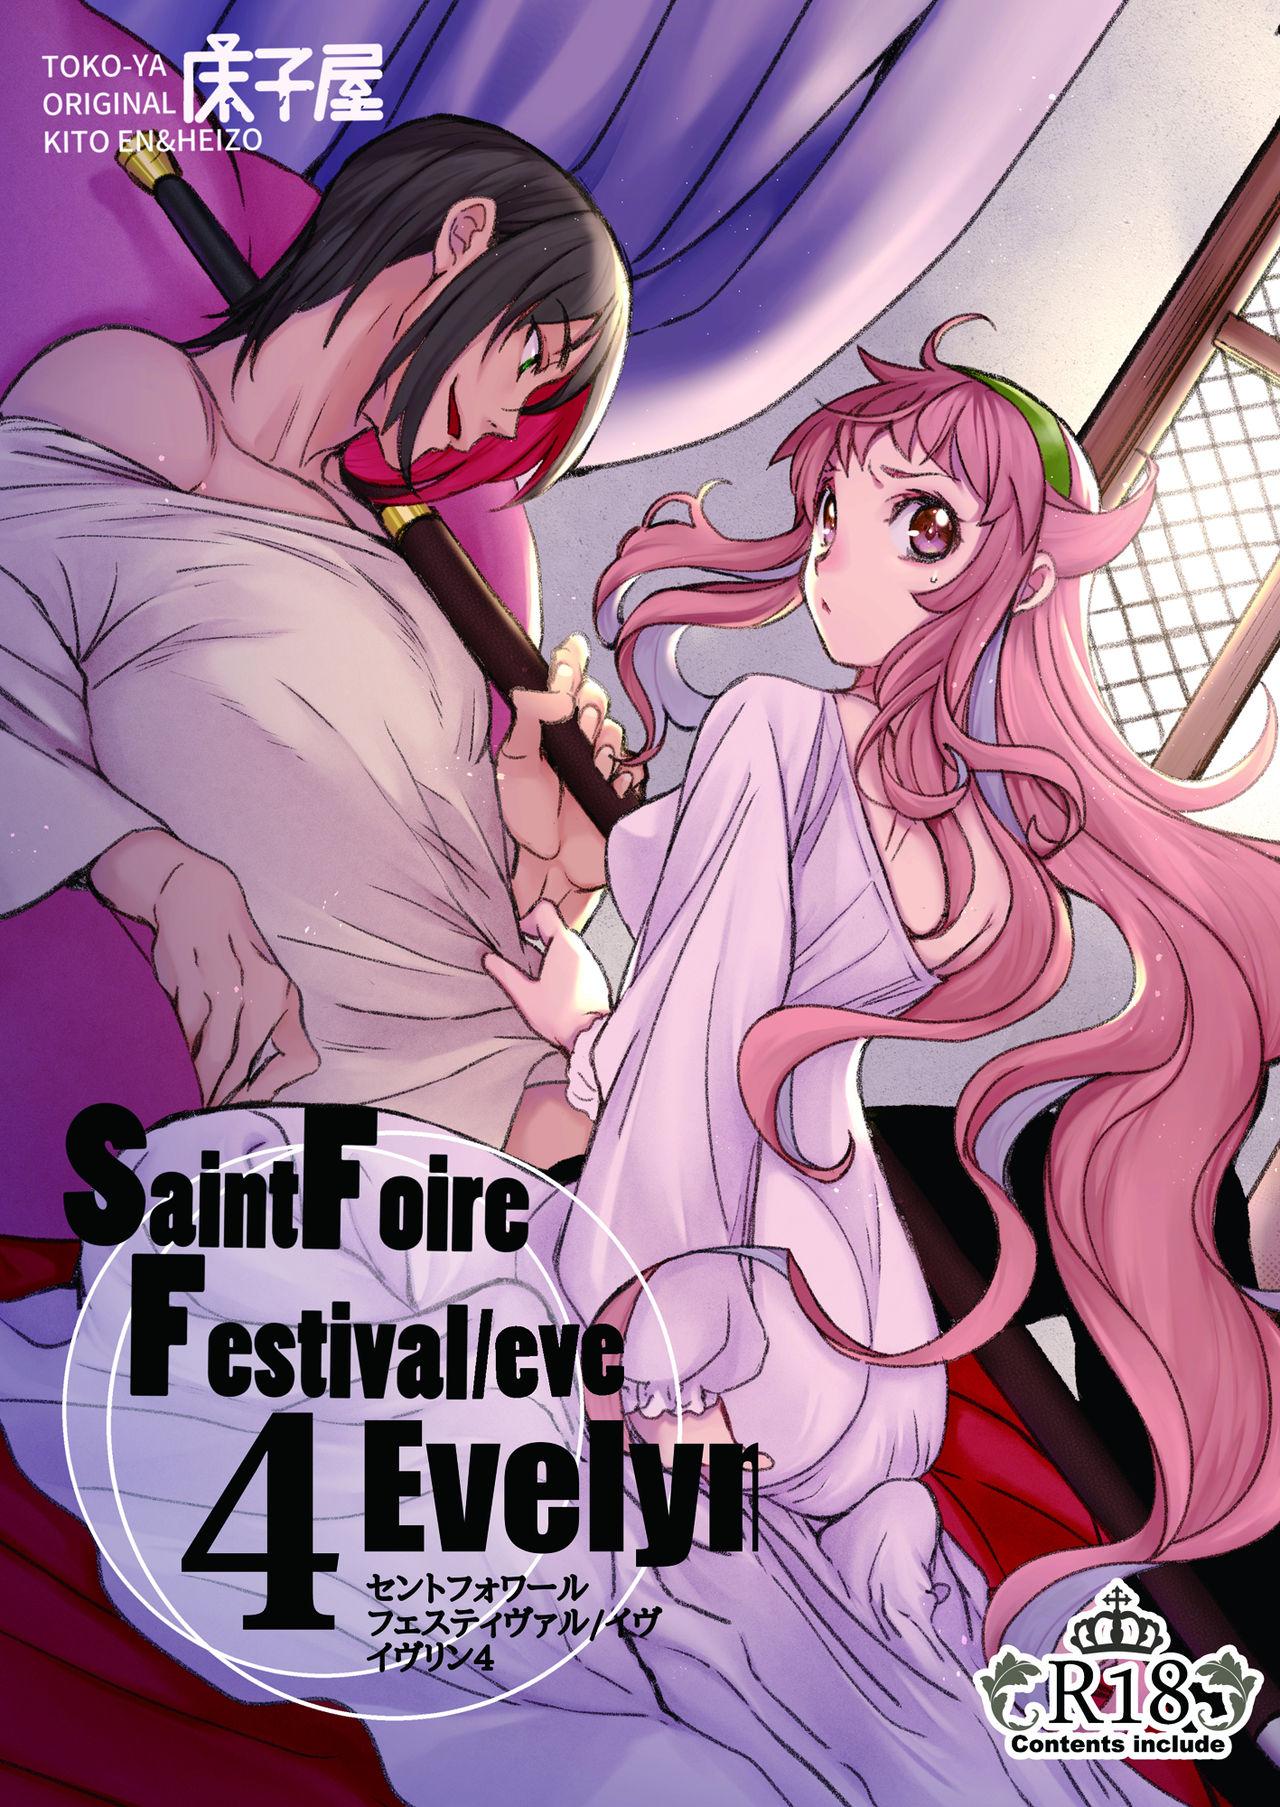 Saint Foire Festival/eve Evelyn:4 0